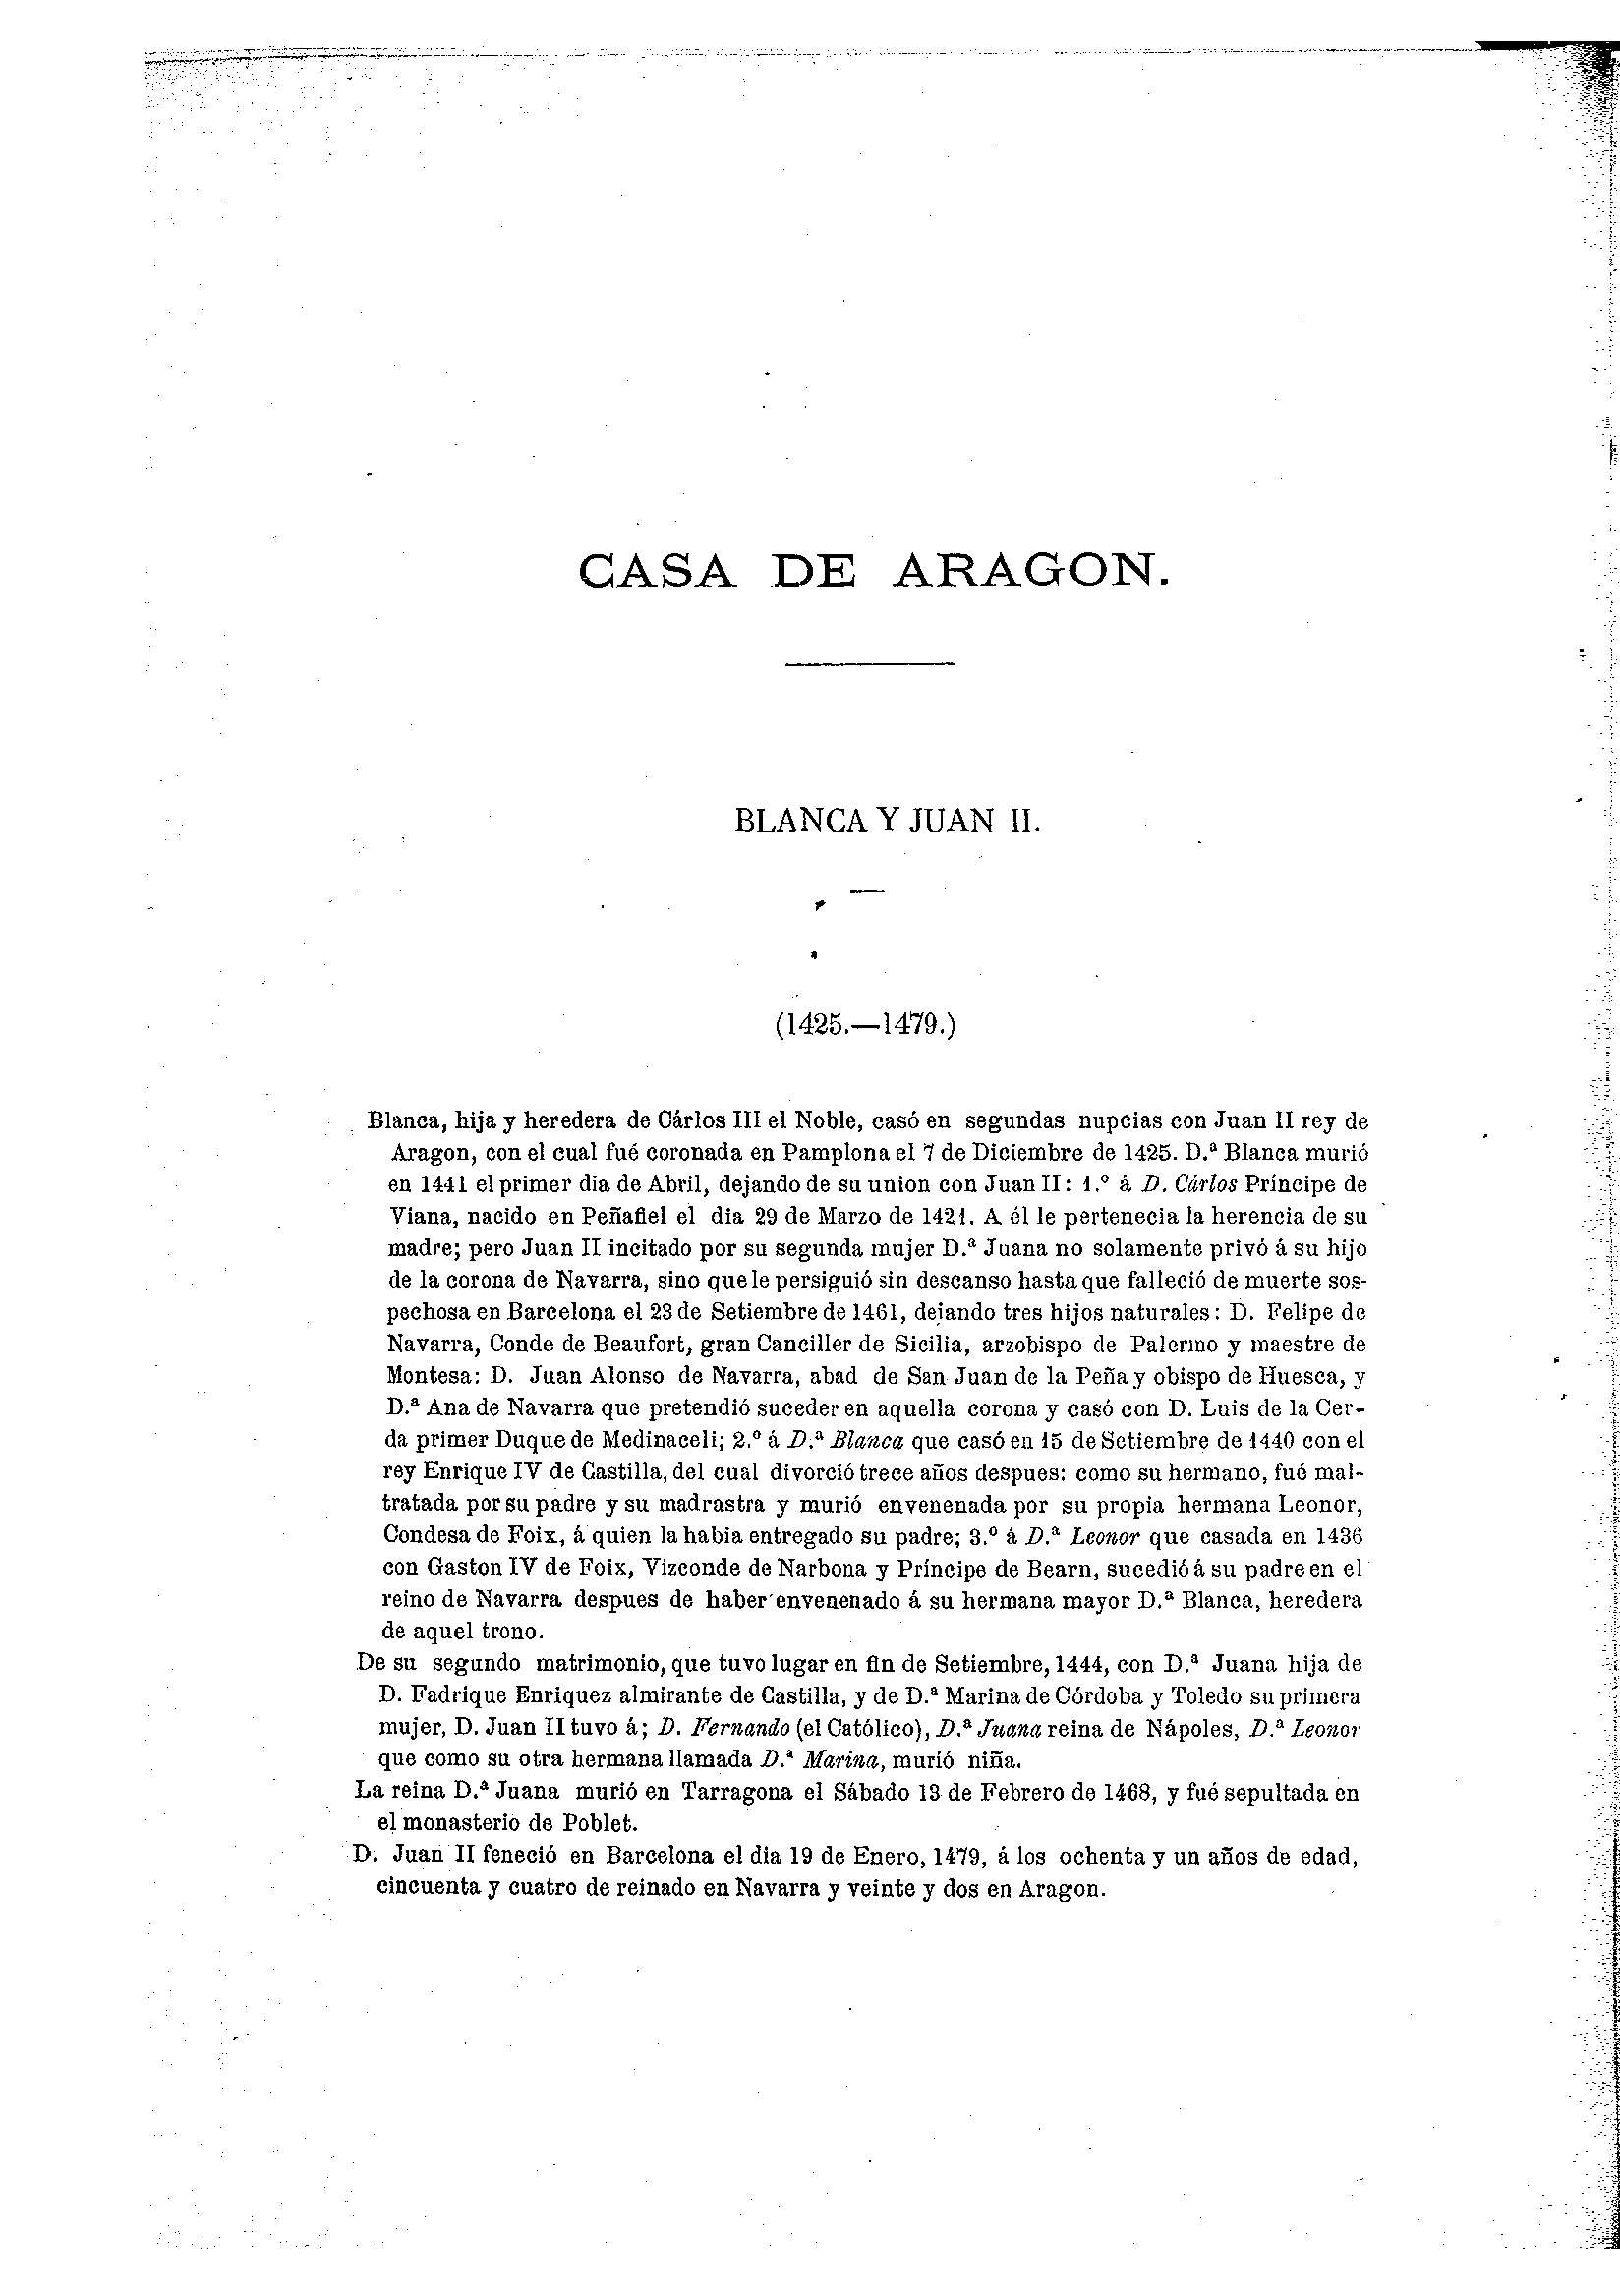 34 [Casa de Aragon]